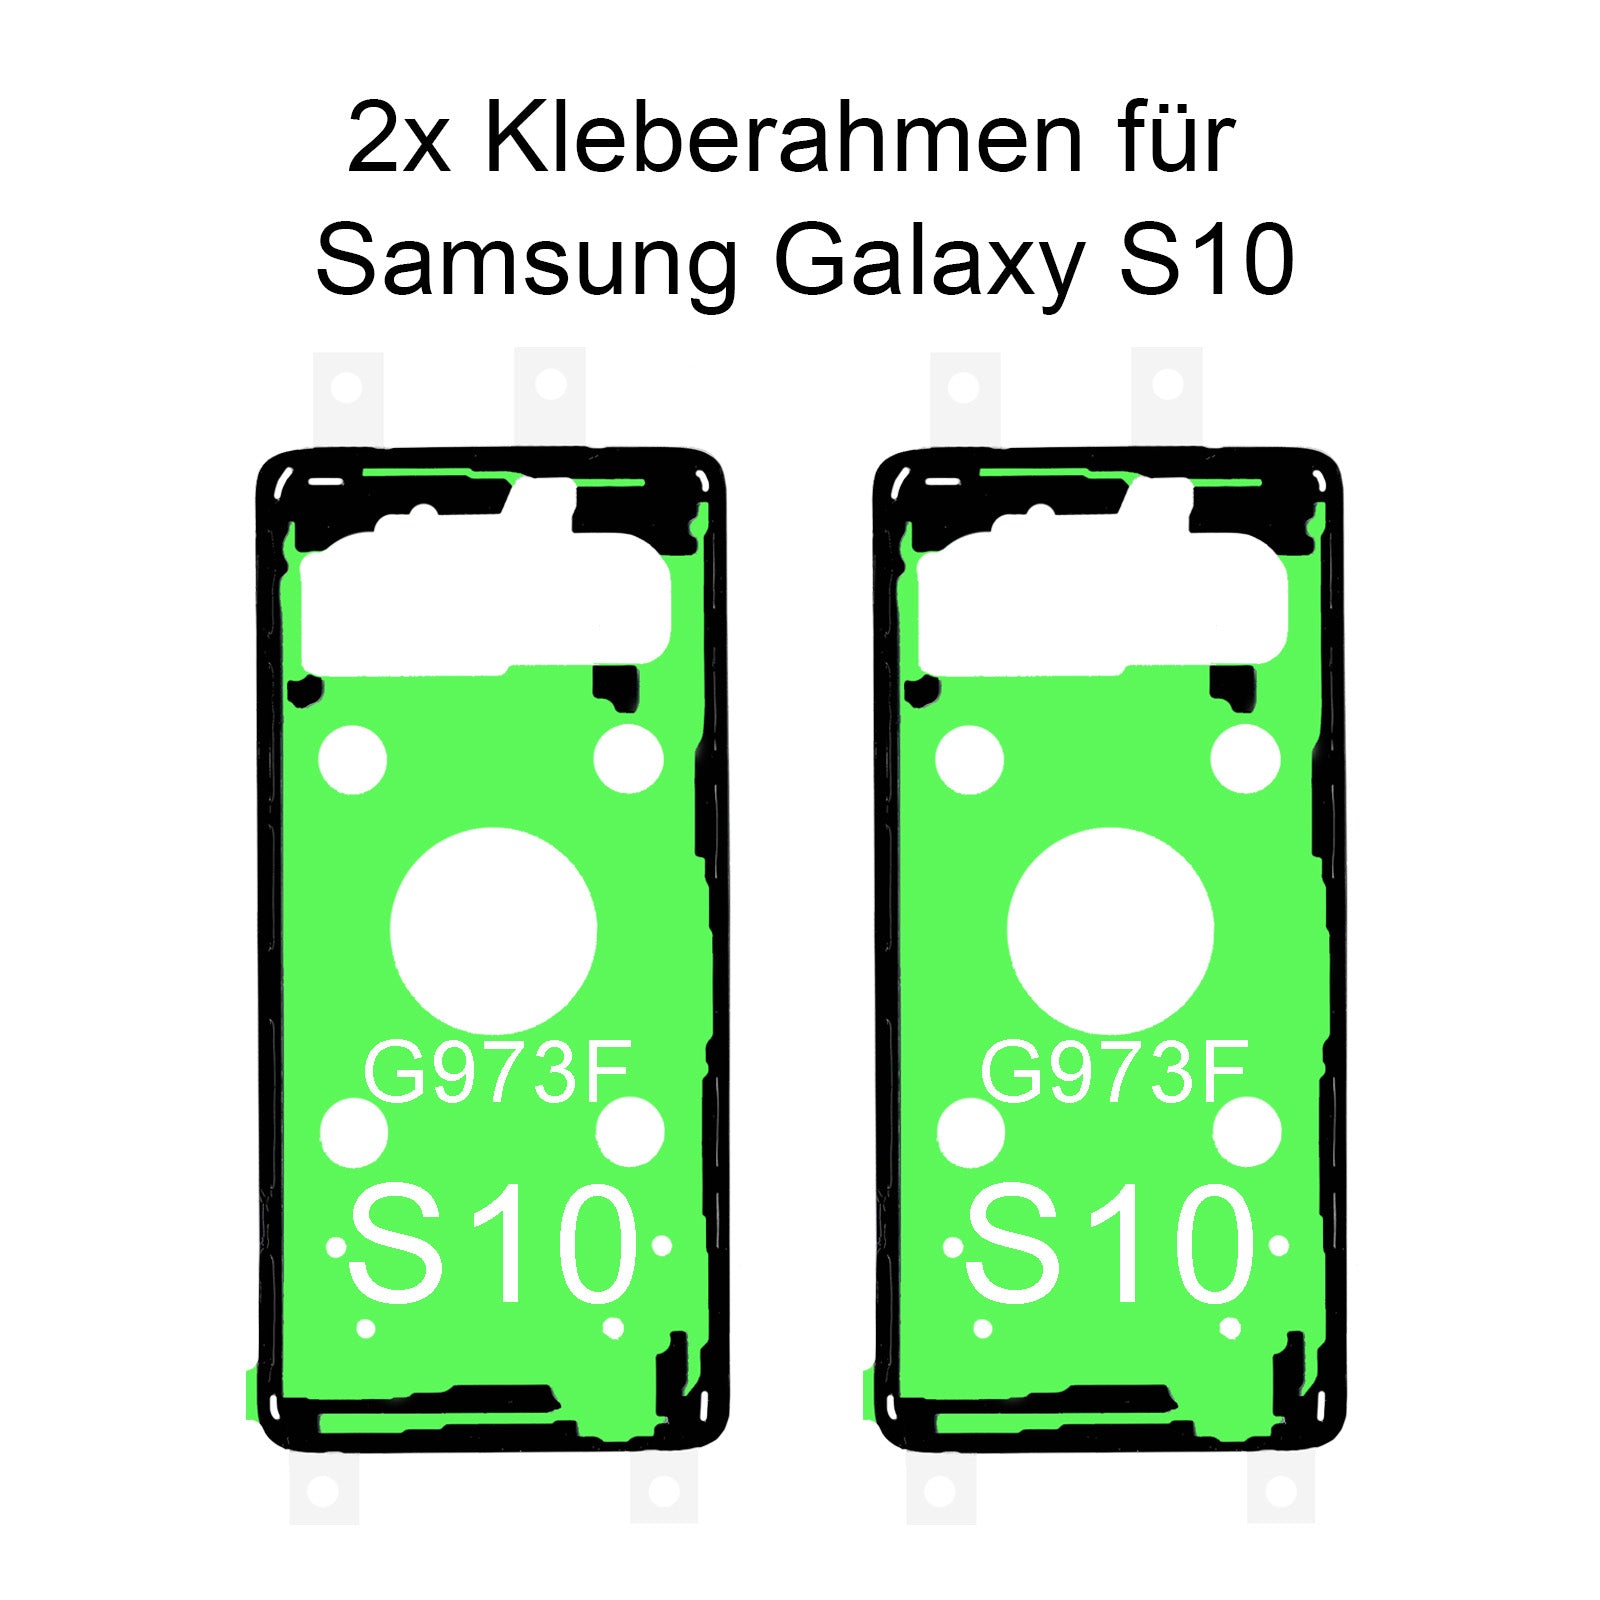 2x von unsern Samsung Galaxy S10 G973F Kleberahmen, jetzt im Dinngsonline Shop entdecken und bestellen!